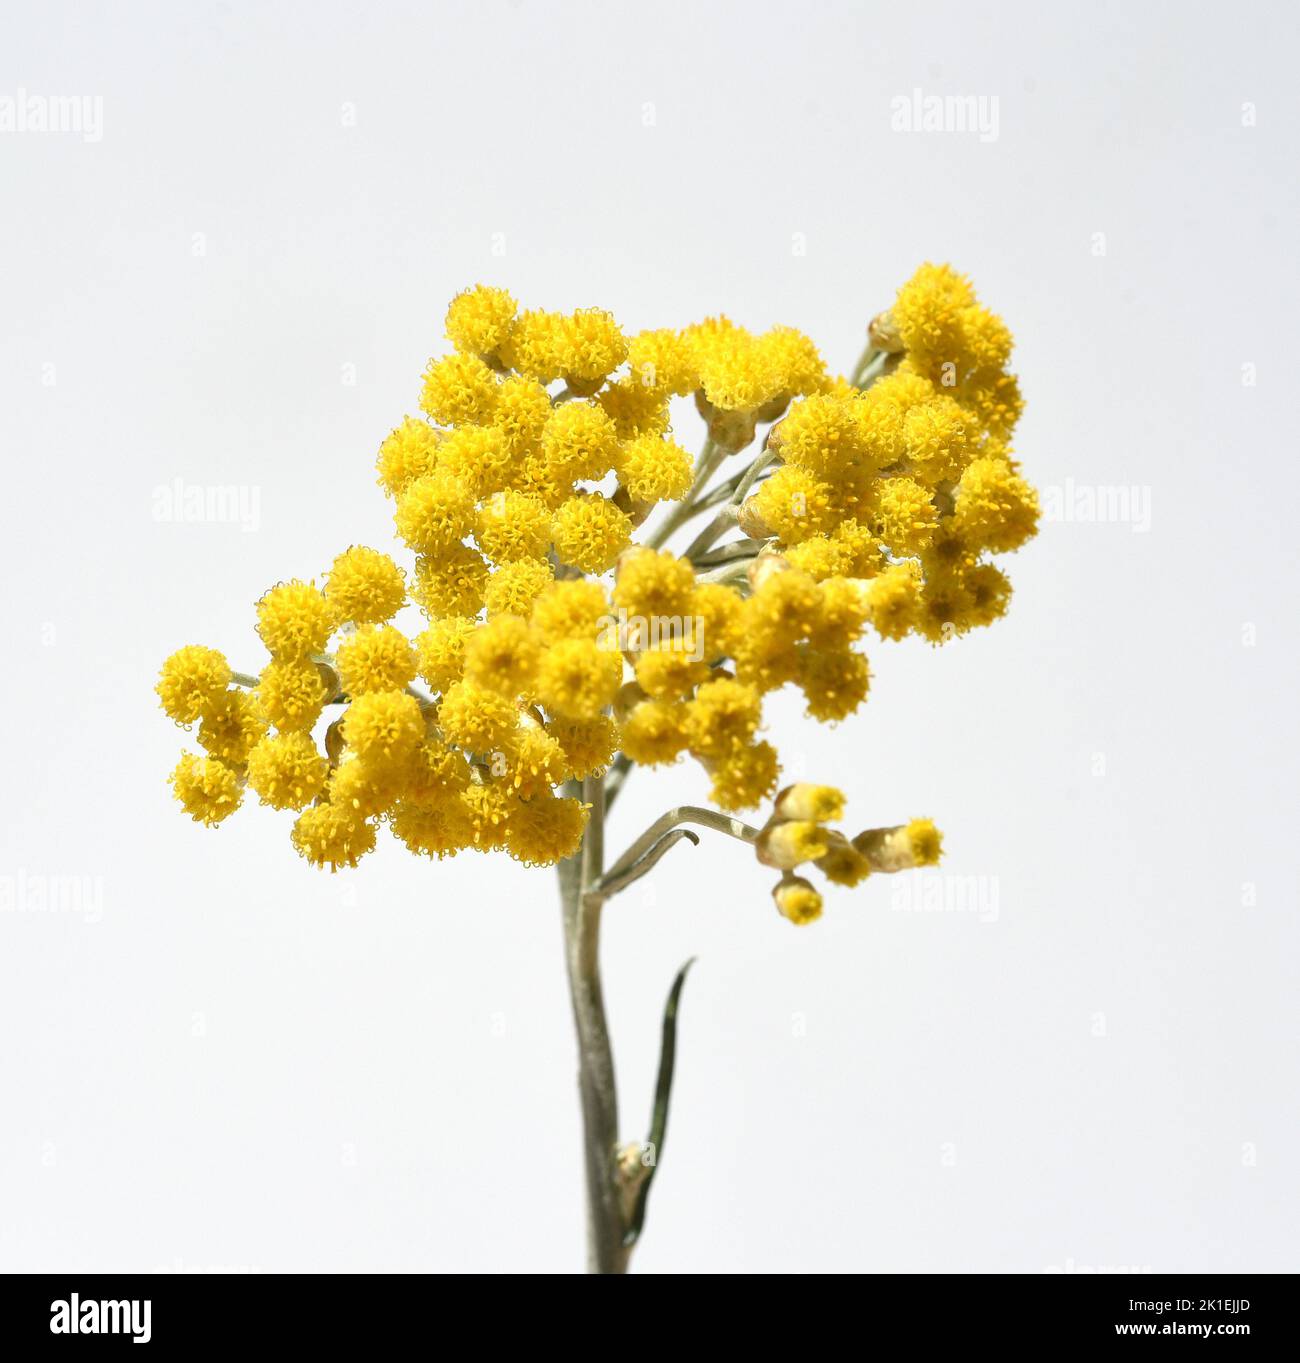 Das Kurvenkraut Helichrysum italicum ist eine wichtige Heilpflanze und eine duftende Pflanze mit gelben Blüten, die auch als Gewürz in der Küche verwendet wird. Stockfoto